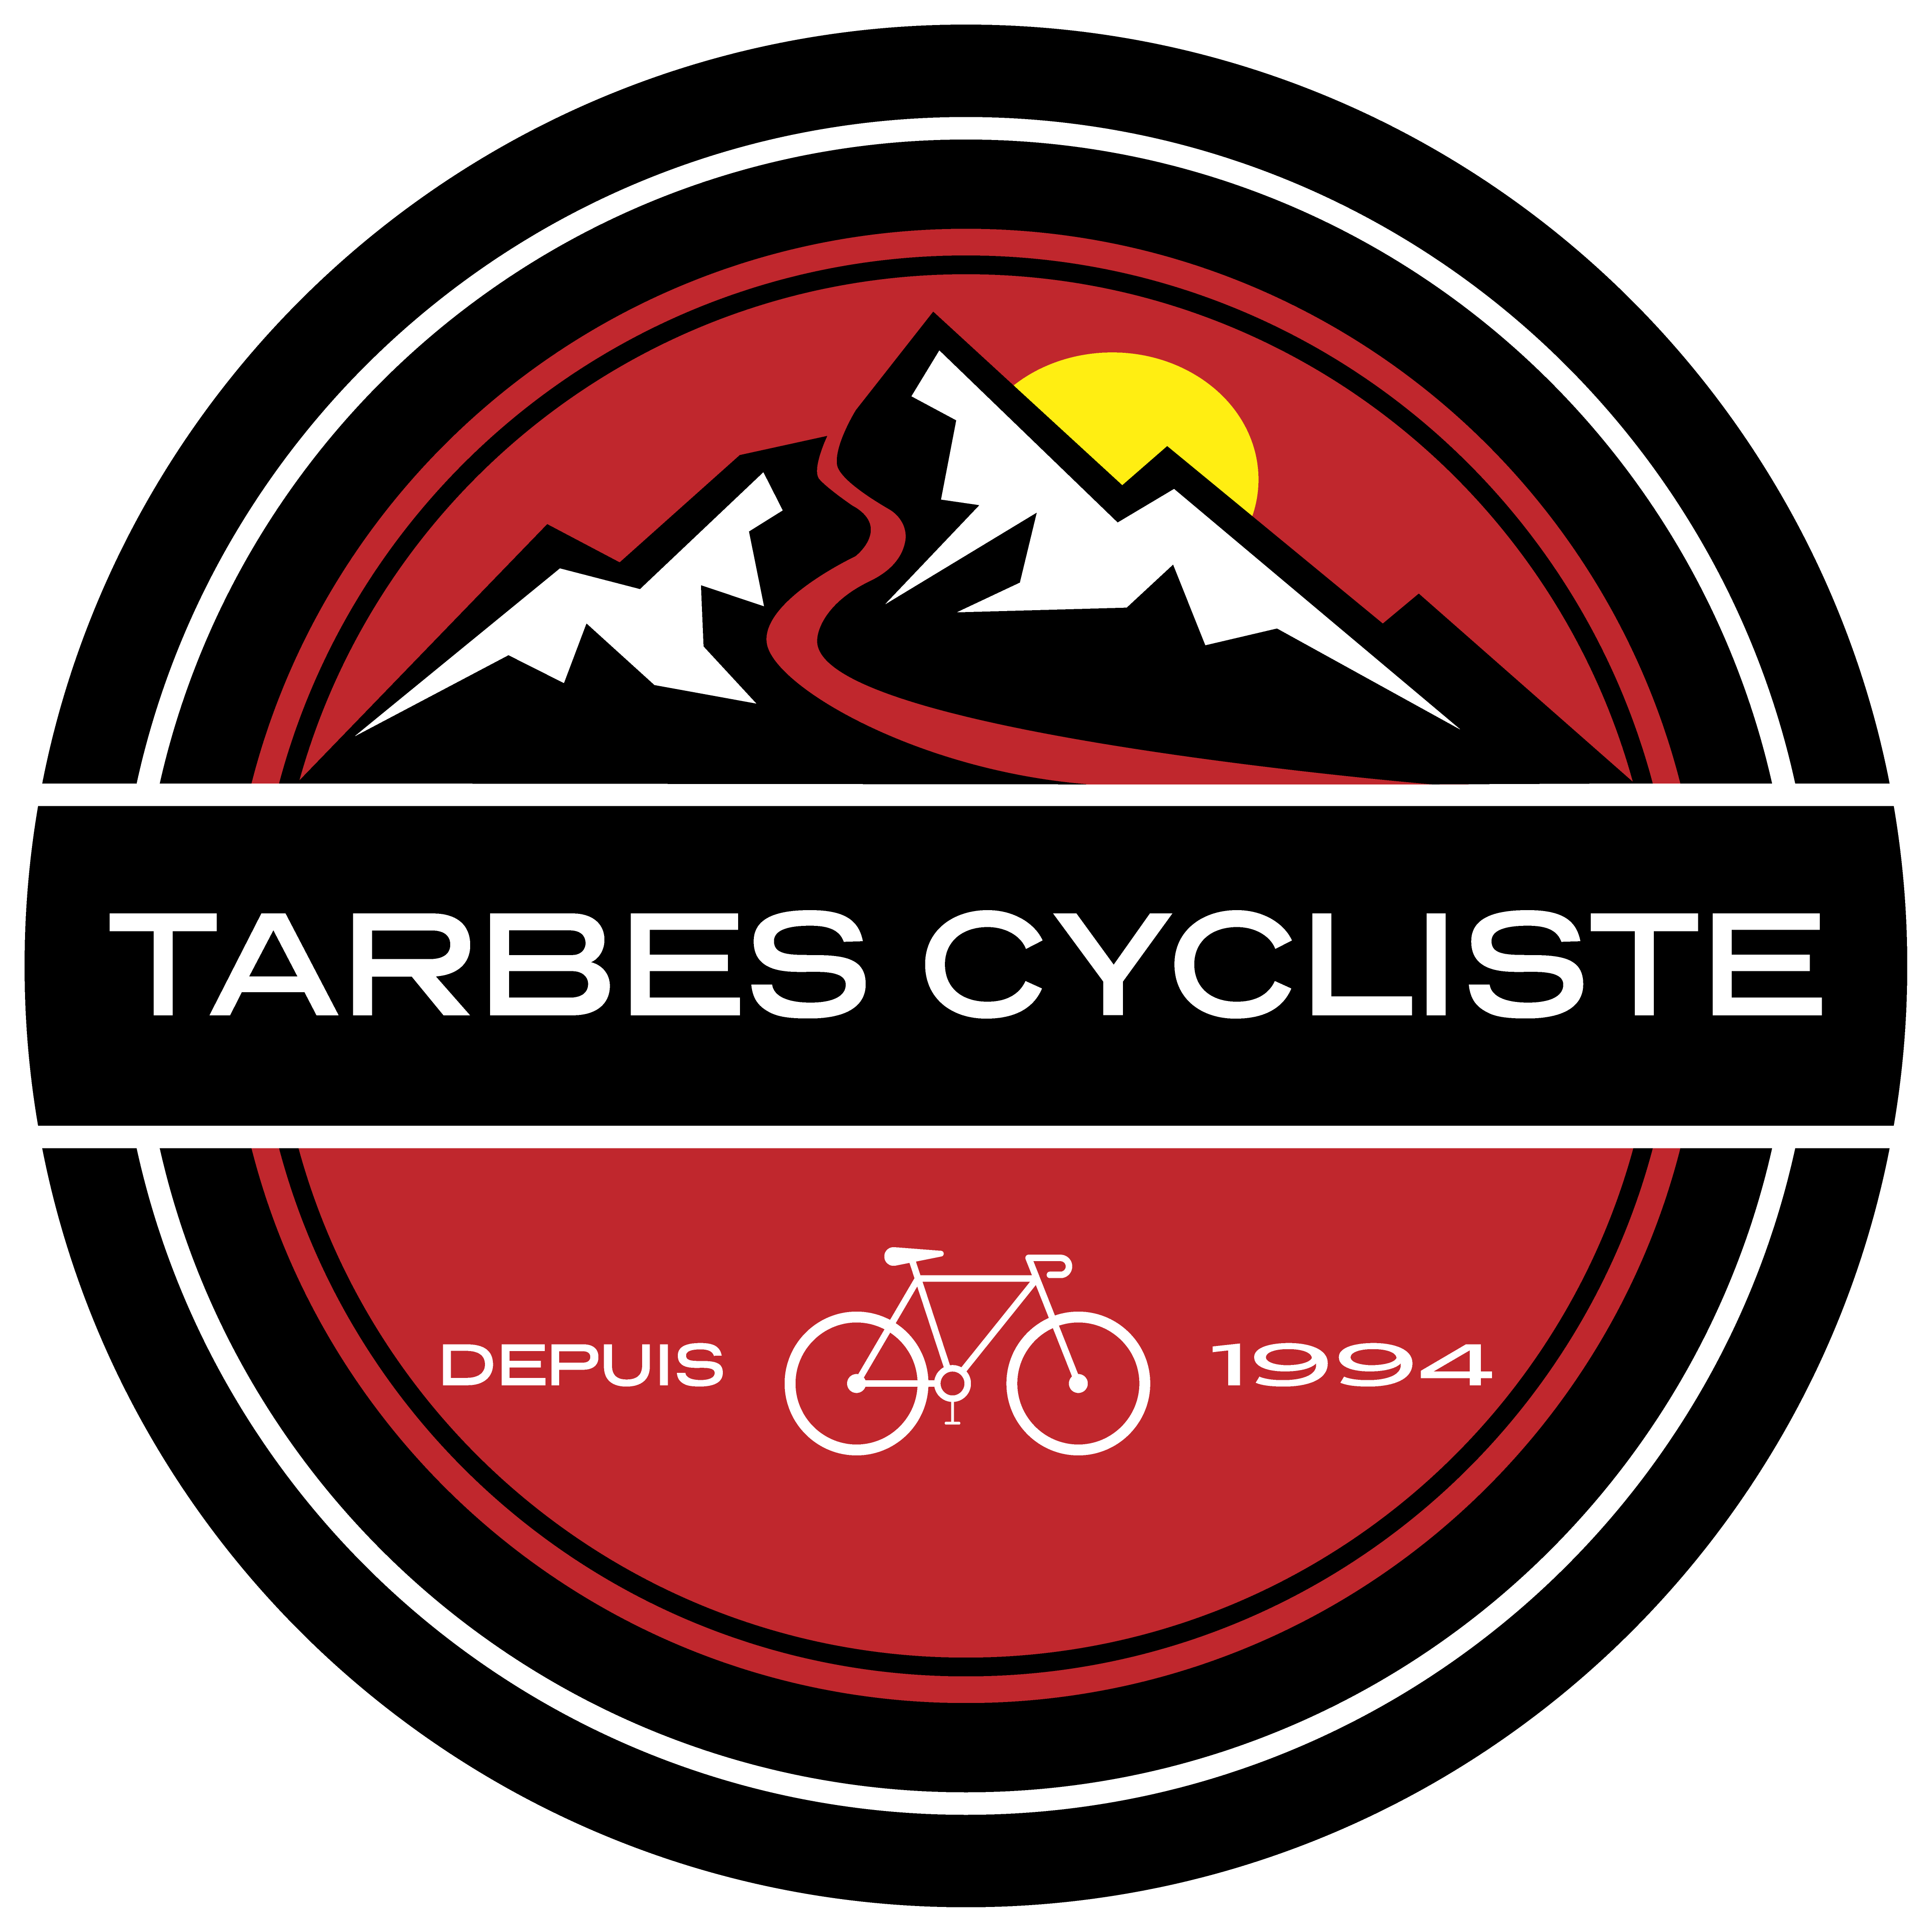 Tarbes Cycliste le club de vélo des hautes pyrénées.